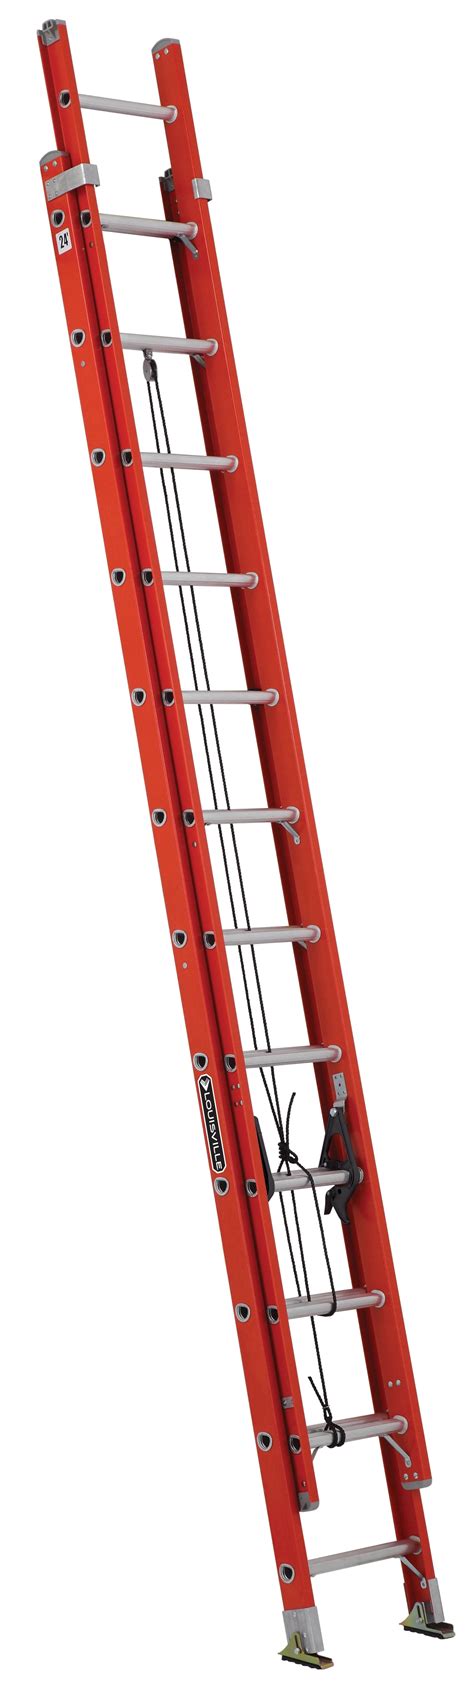 Louisville Ladder Fe3224 24 Ft Fiberglass Extension Ladder Type Ia